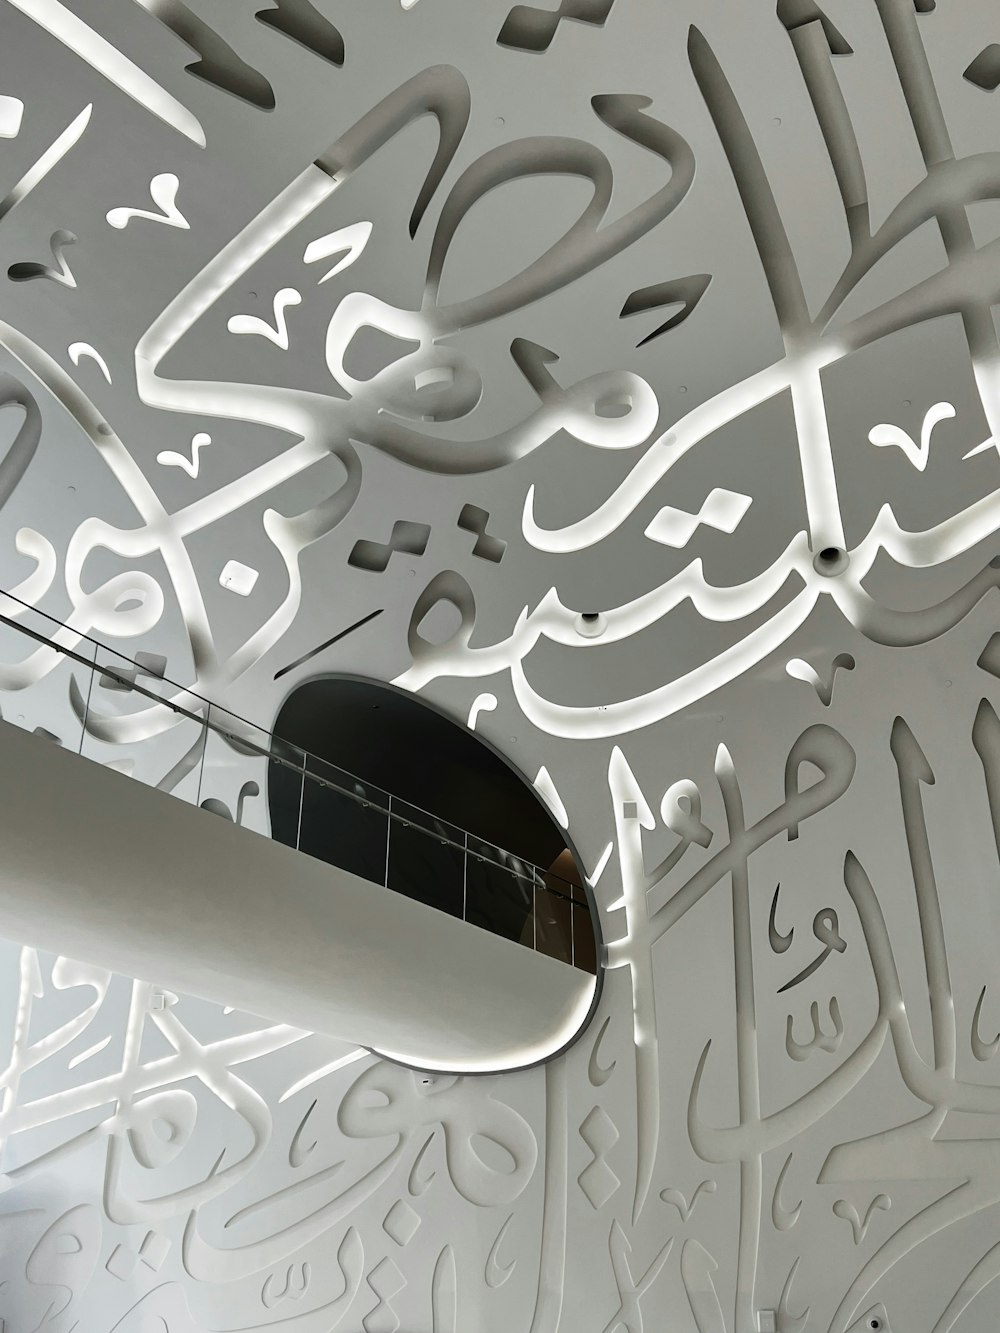 アラビア語が書かれた白い天井